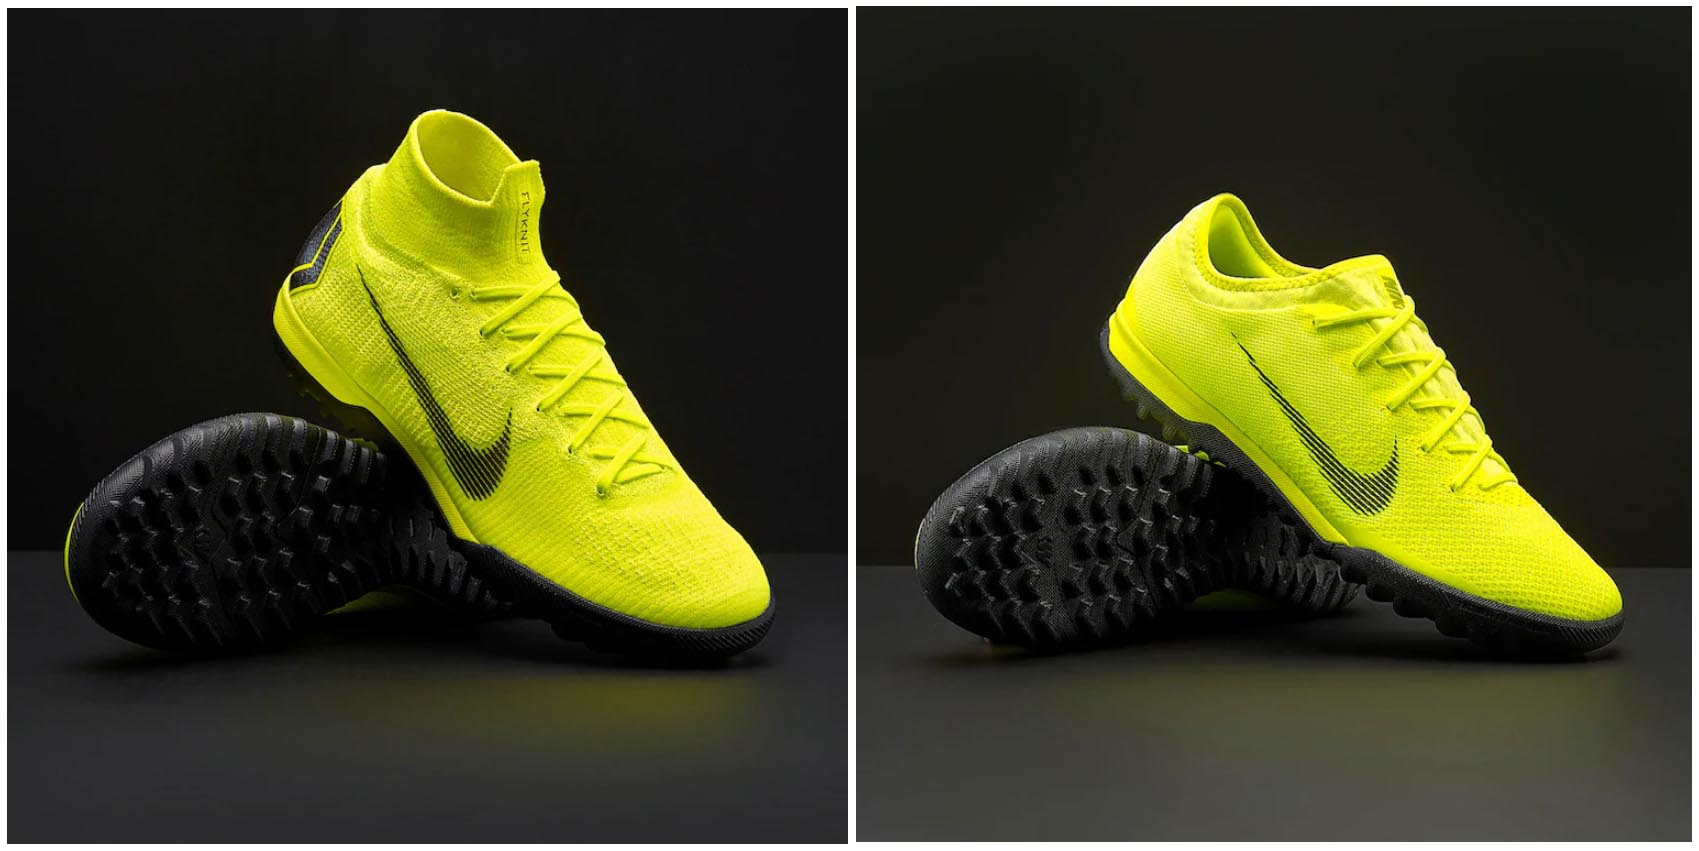 Nike ứng dụng thành công chất liệu vải sợi dệt lên các mẫu giày sân cỏ nhân tạo của mình